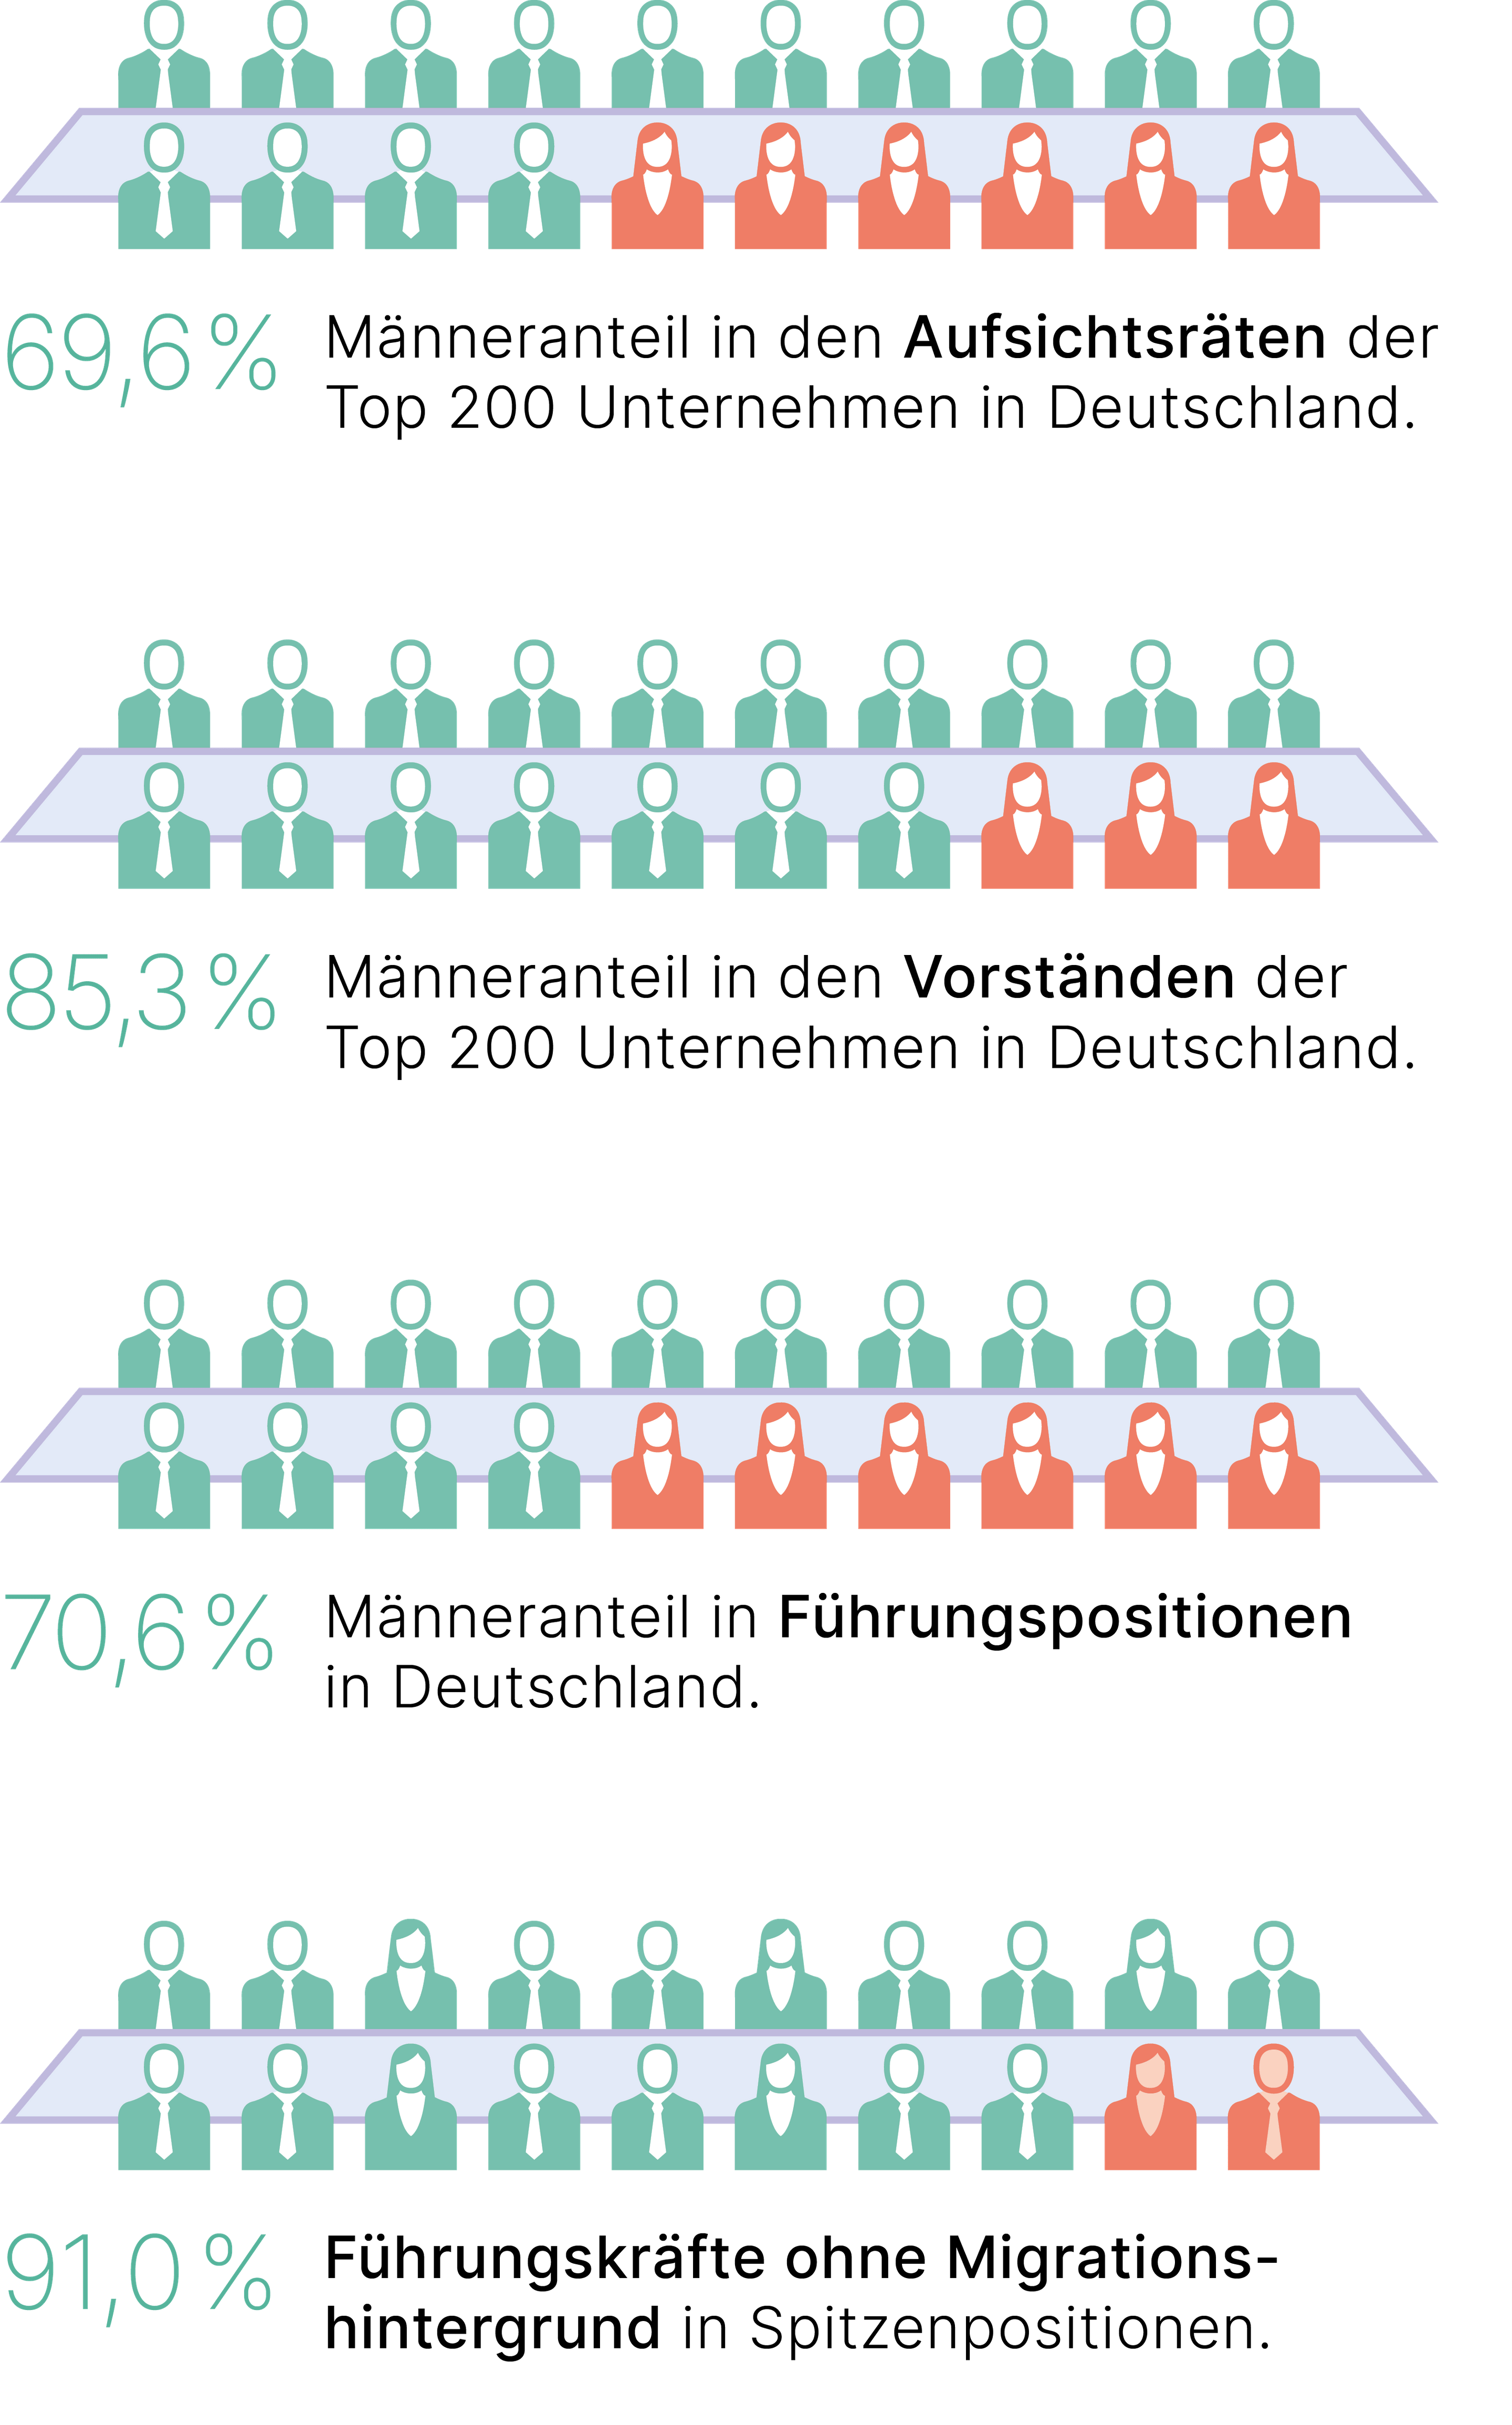 70% der Führungspositionen sind in Deutschland von Männern besetzt. Der Männeranteil in den Vorständen der Top 200 Unternehmen in Deutschland liegt bei 85 Prozent.